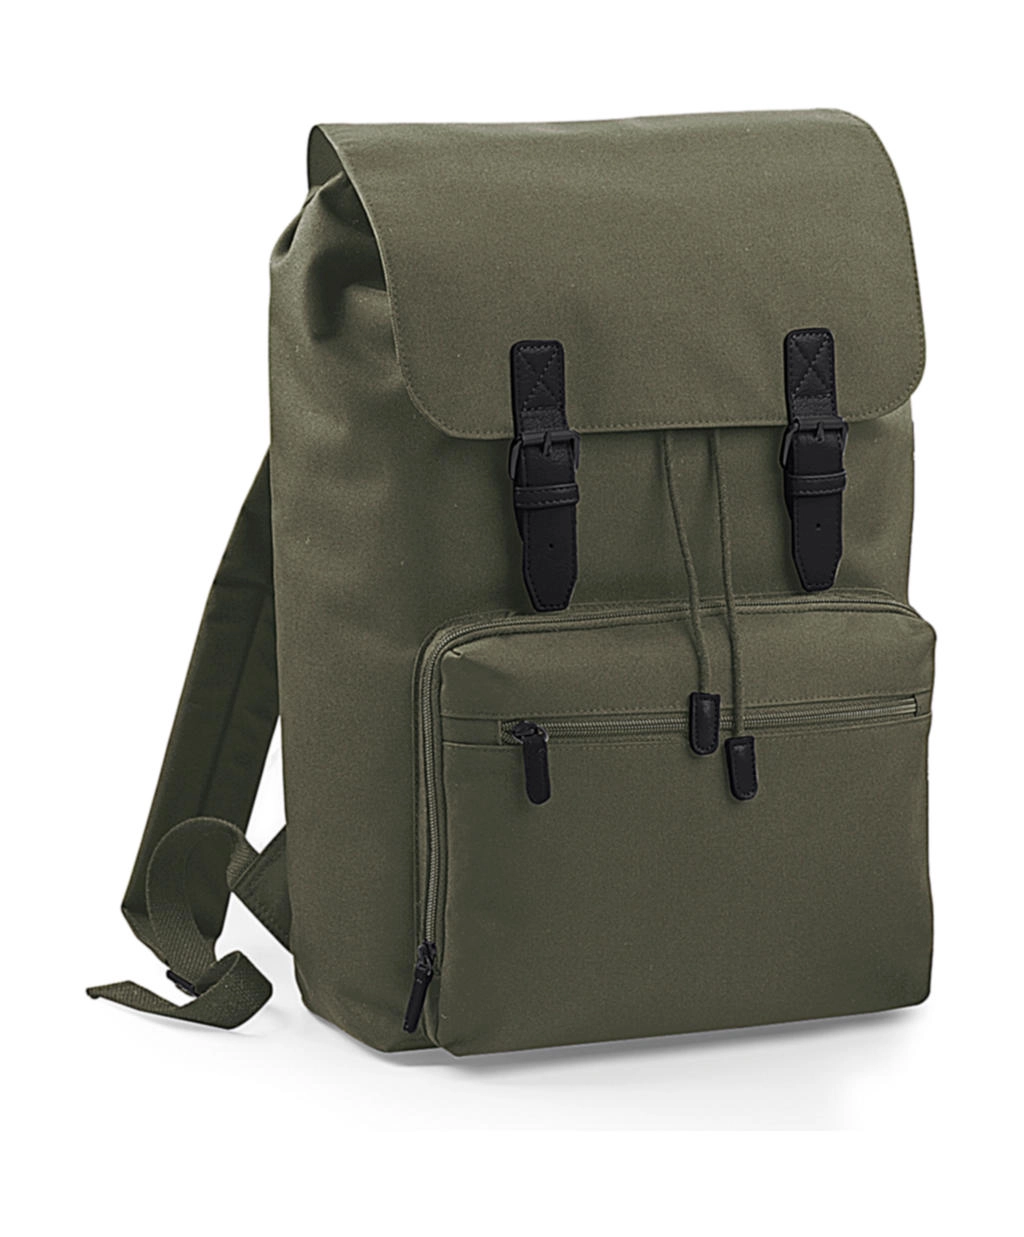 Vintage Laptop Backpack zum Besticken und Bedrucken in der Farbe Olive Green/Black mit Ihren Logo, Schriftzug oder Motiv.